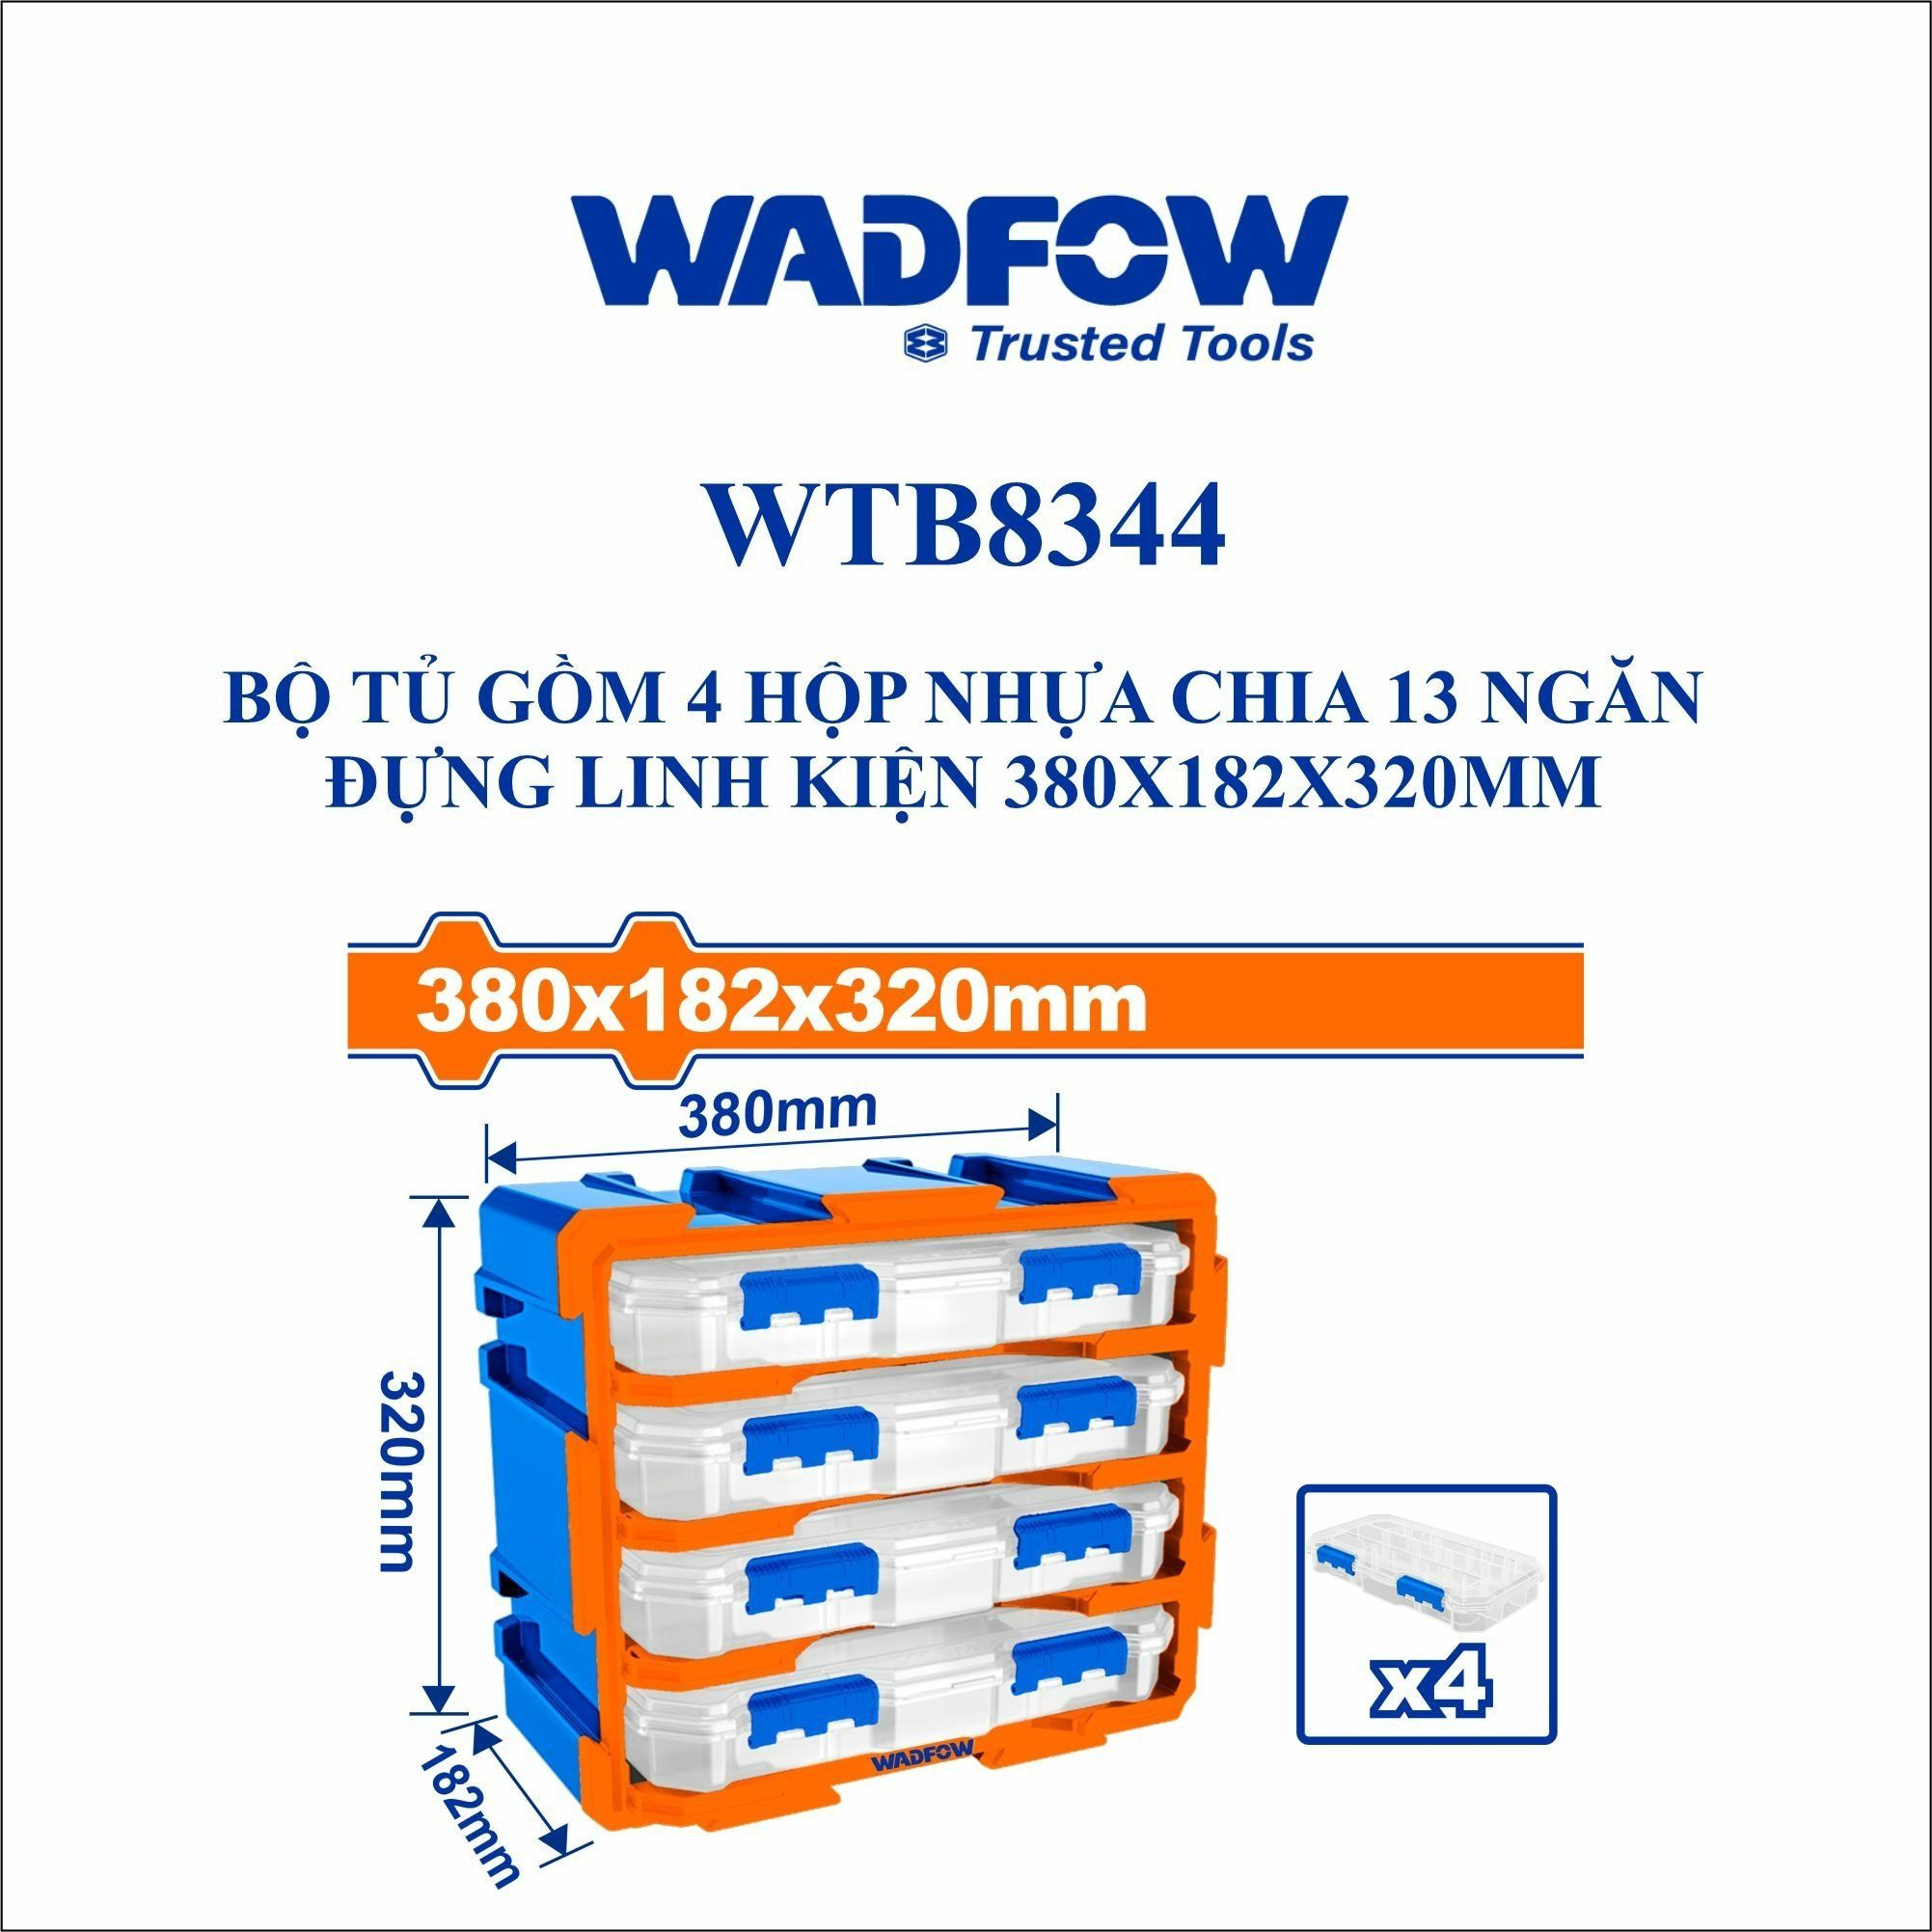  Bộ tủ gồm 4 hộp nhựa chia 13 ngăn đựng linh kiện 380x182x320mm WADFOW WTB8344 